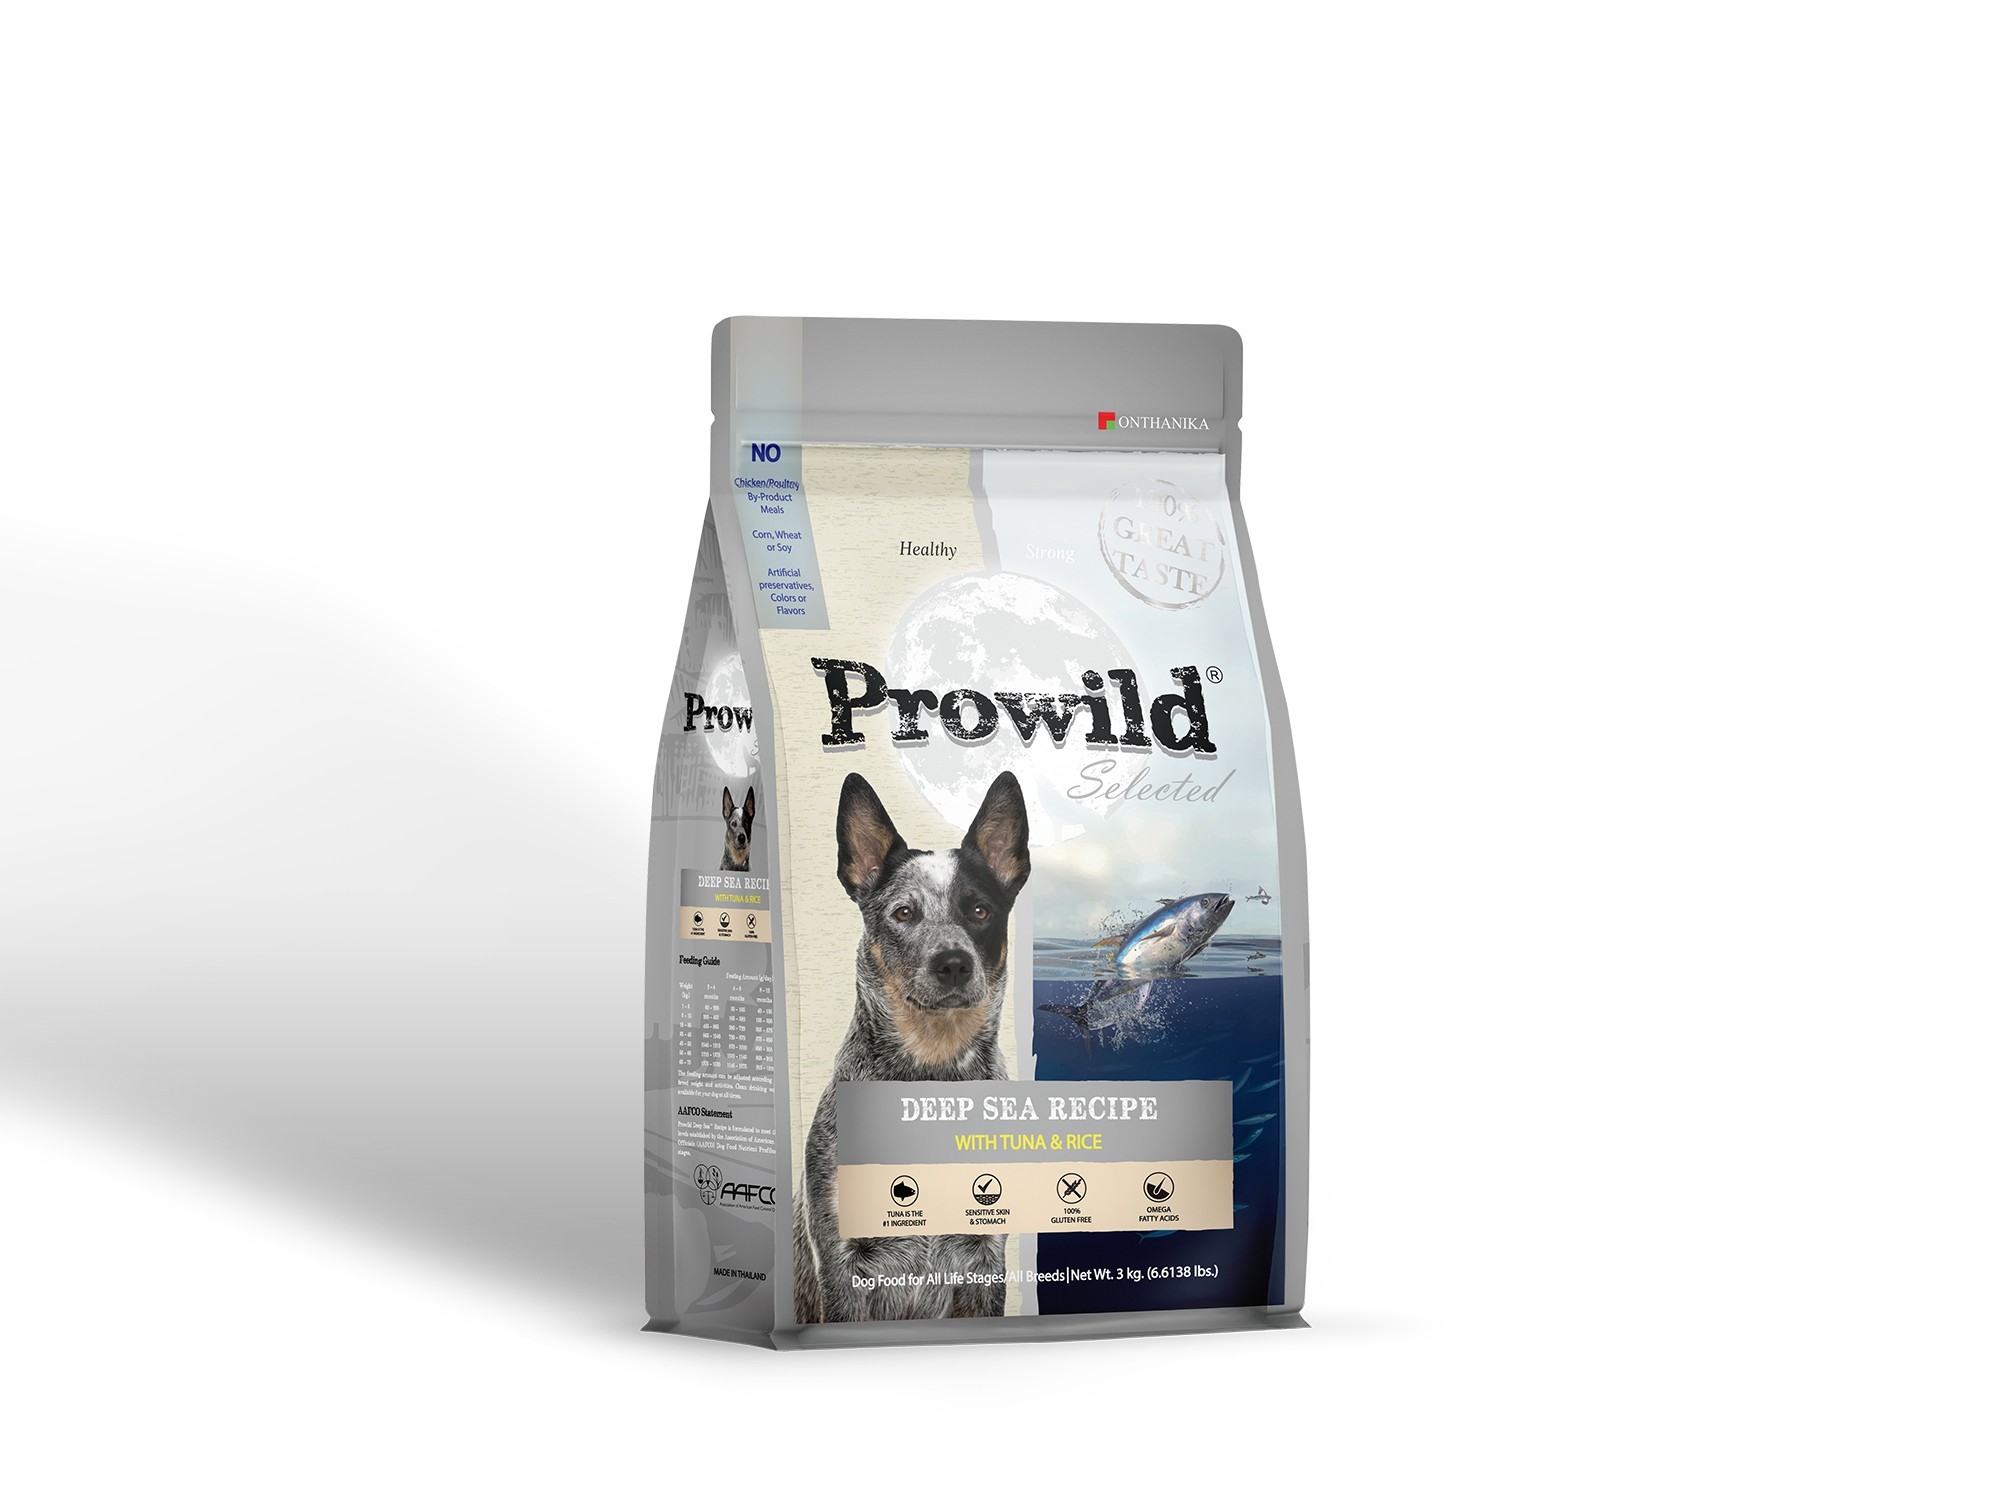 Prowild Selected Deep Sea Tuna & Rice 3 kg. อาหารสุนัขโปรไวลด์ สูตรปลาทูน่า 3 กก. สำหรับสุนัขทุกสายพันธ์ุ/ทุกช่วงอายุ